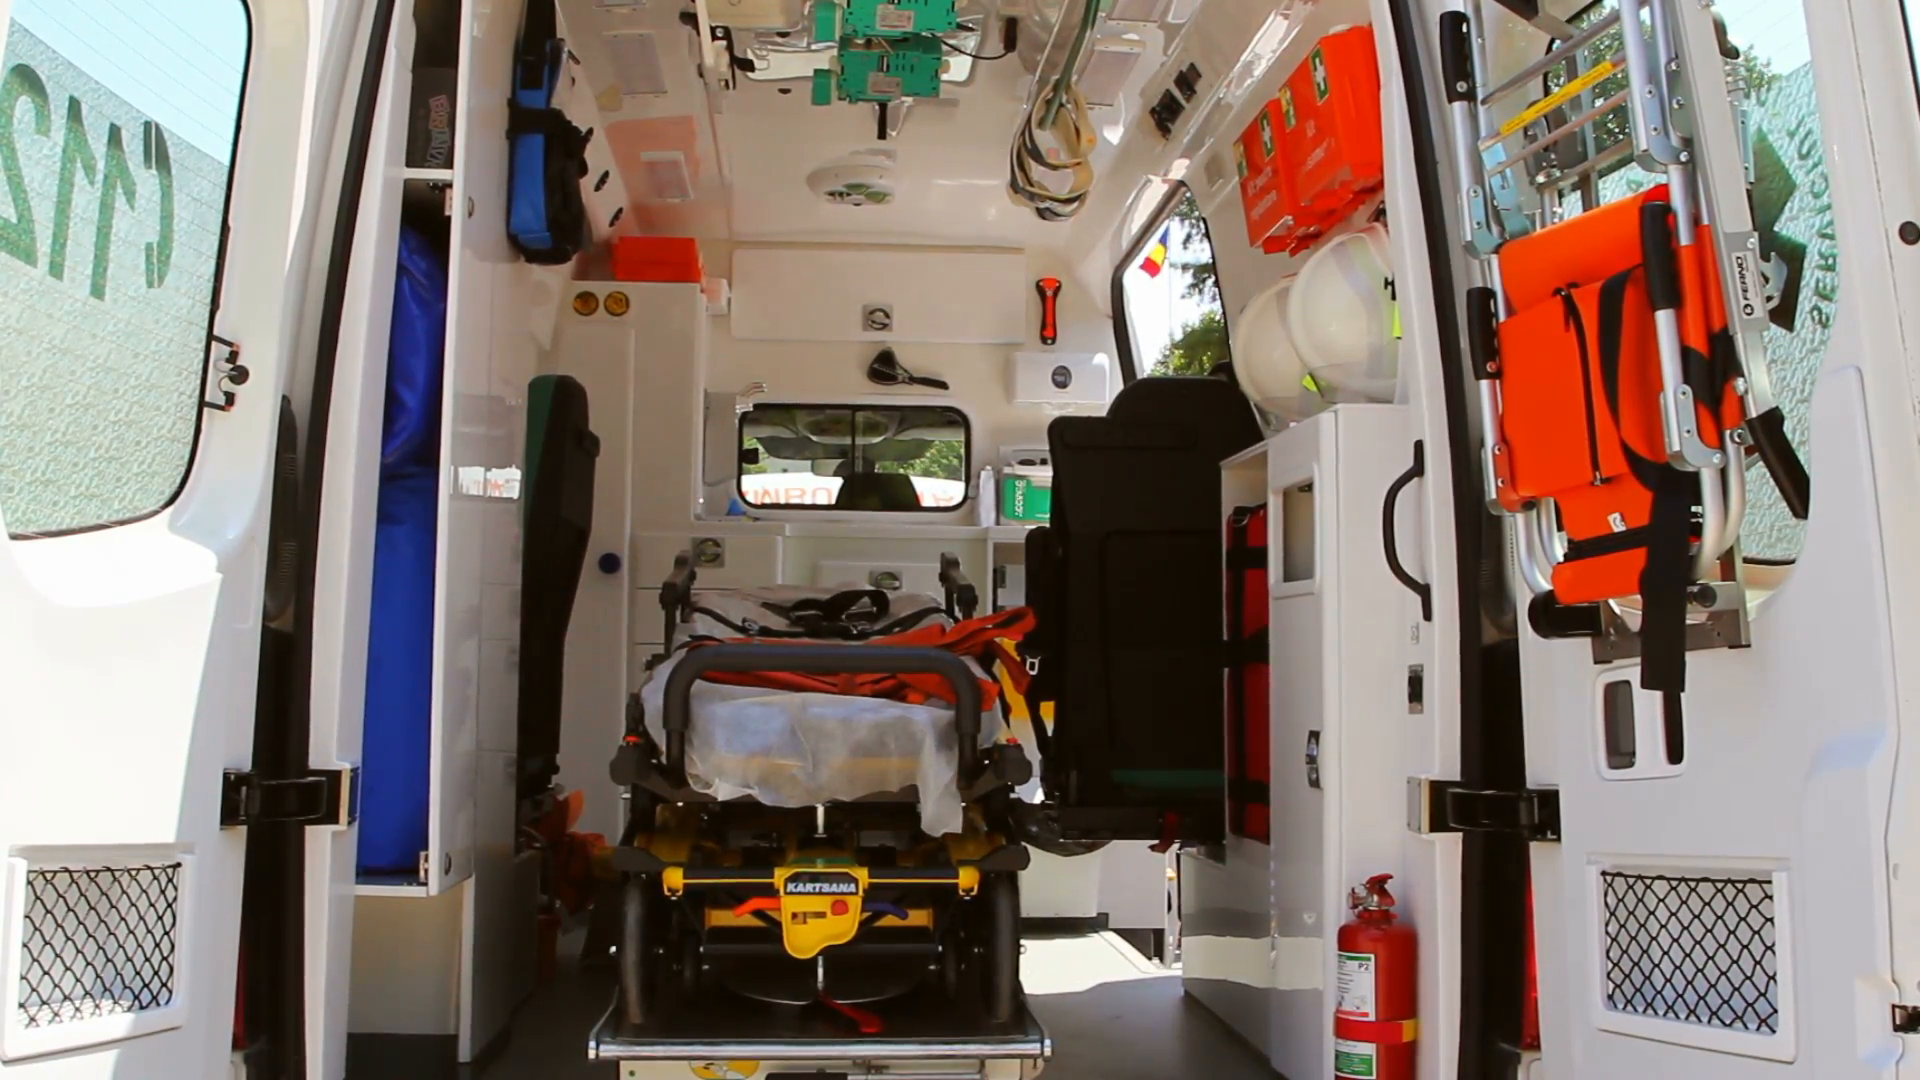 Sağlık Bakanlığı, 2019 yılında akıllı ambulans dönemini başlatıyor